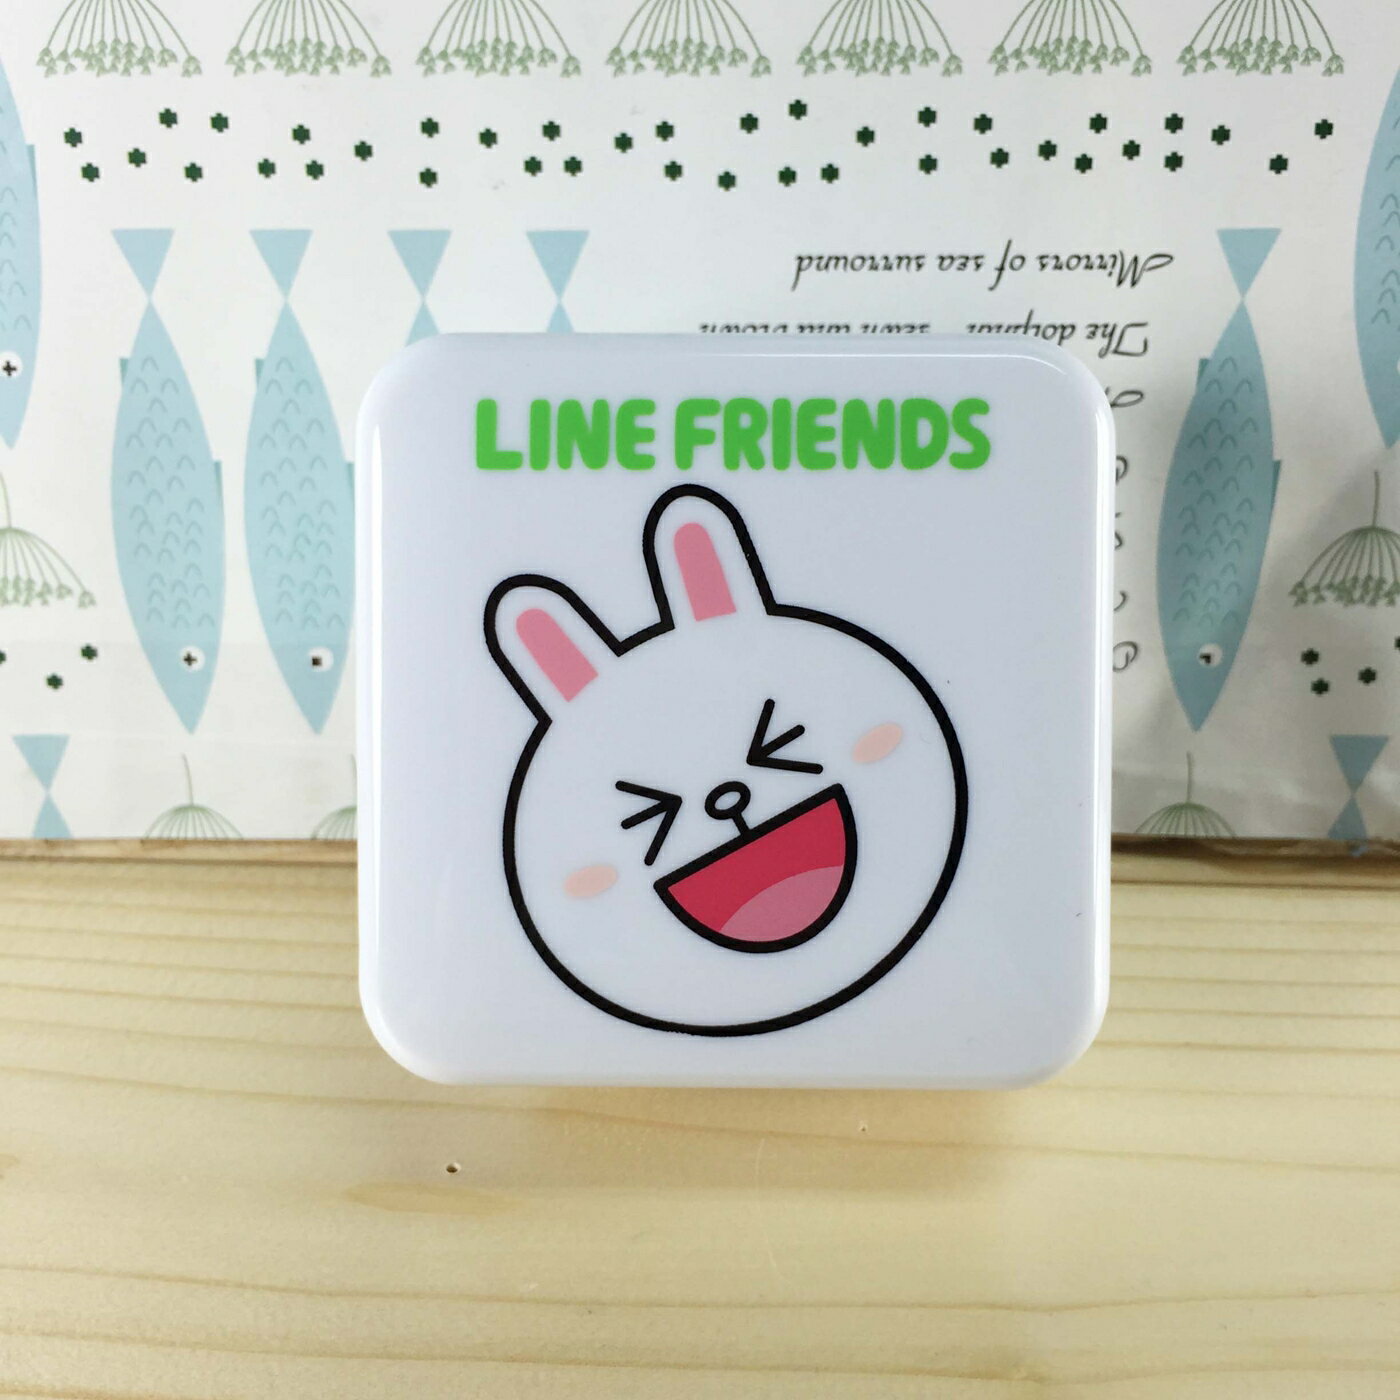 【震撼精品百貨】LINE FRIENDS 兔兔、熊大 充電器-方形造型插頭-兔兔圖案 震撼日式精品百貨